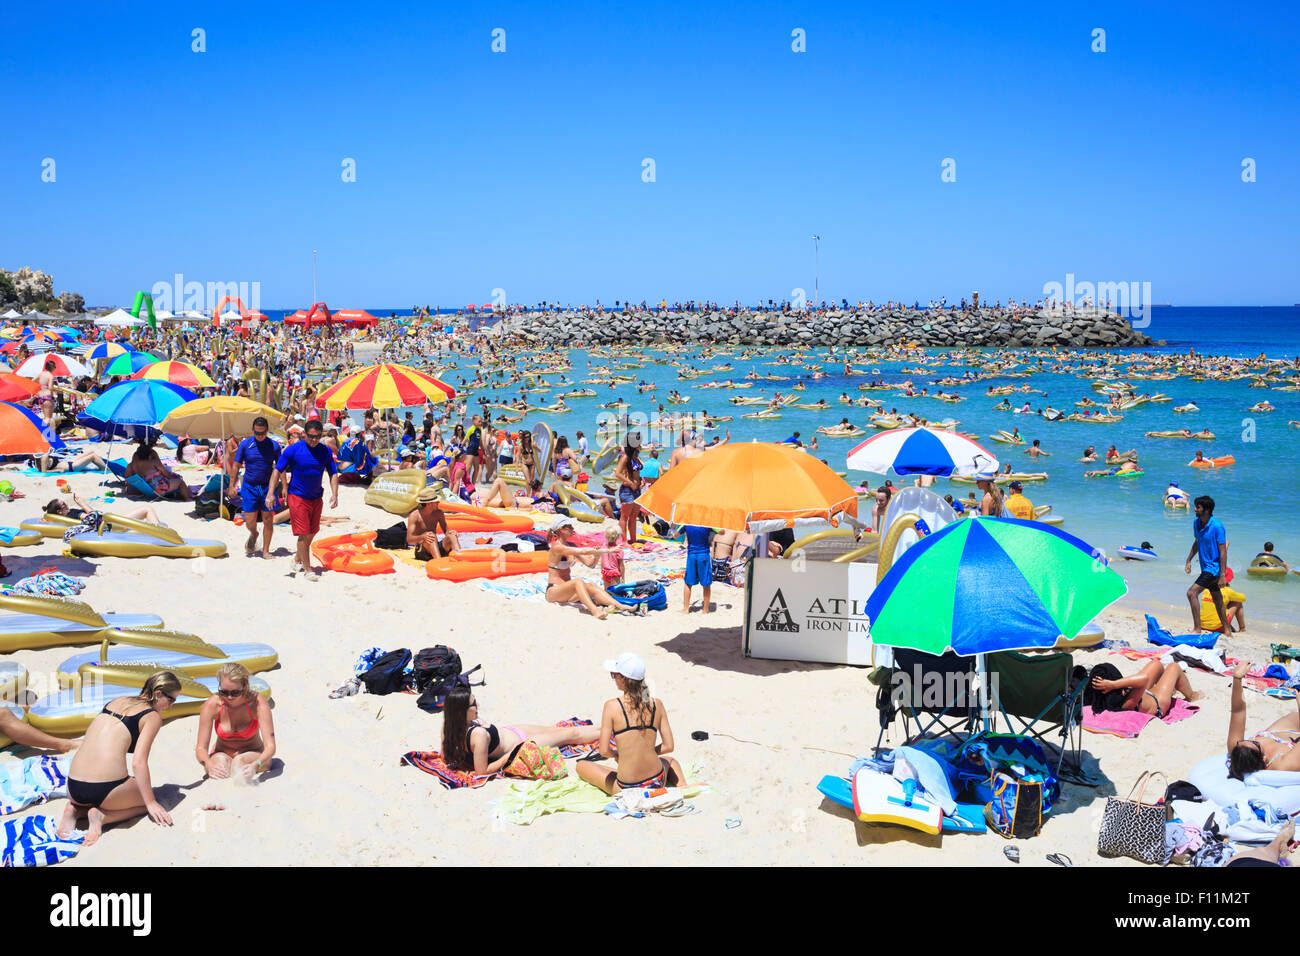 Una molto frequentata e affollata Cottesloe Beach in Australia Day 2015. Persone in mare per il gommone tentativo di record mondiale Foto Stock